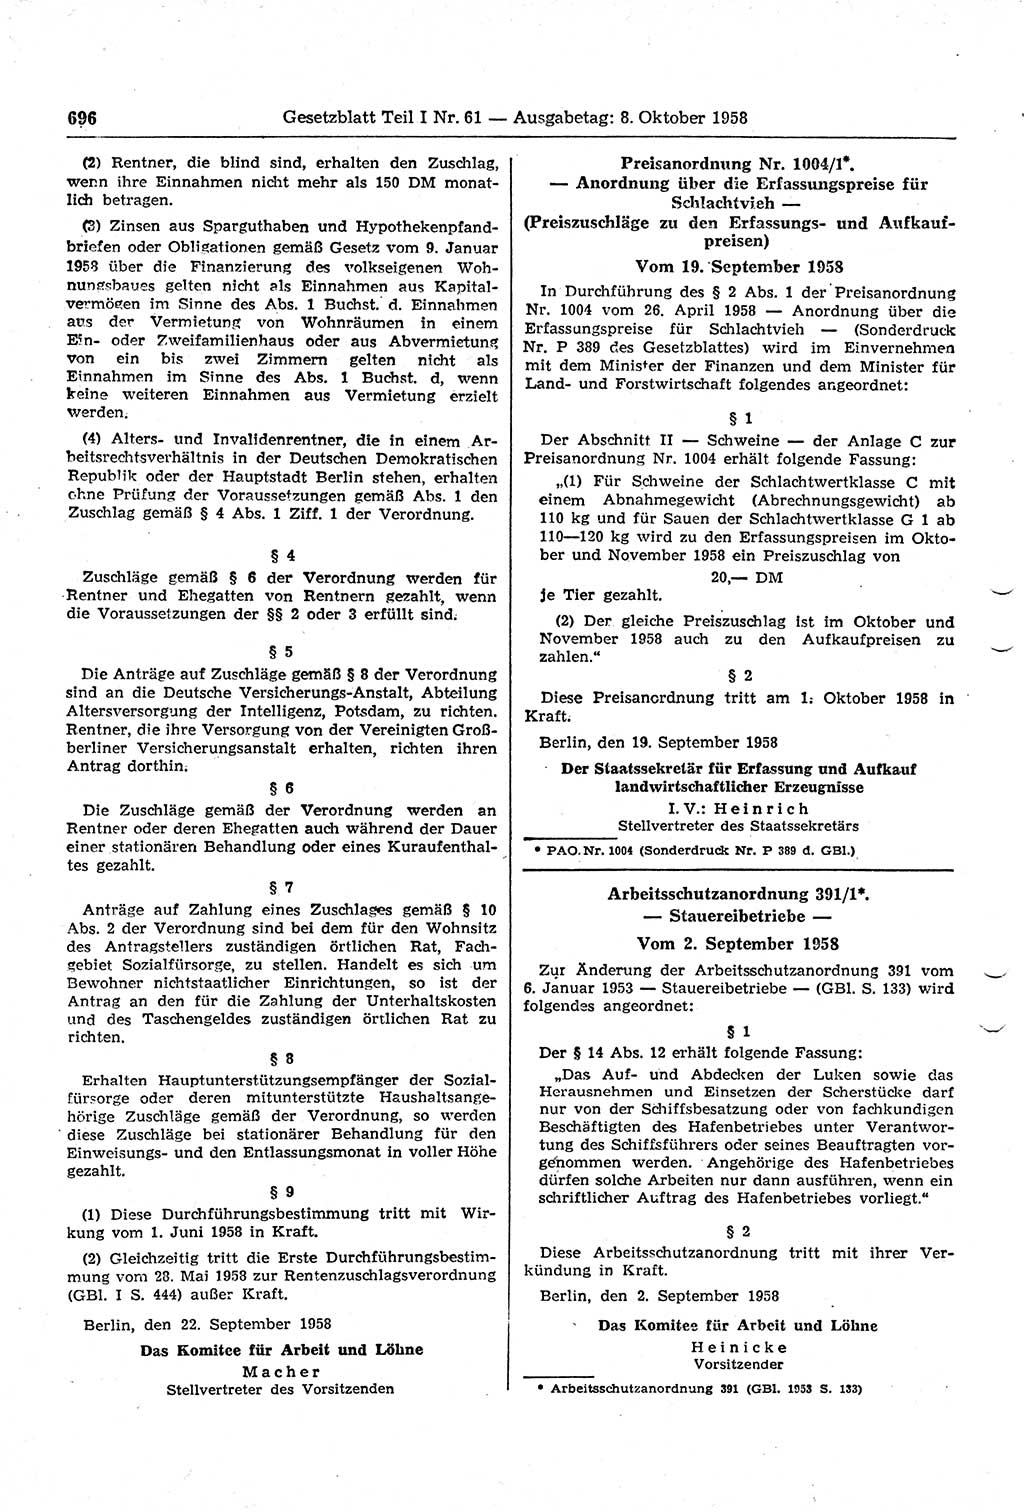 Gesetzblatt (GBl.) der Deutschen Demokratischen Republik (DDR) Teil Ⅰ 1958, Seite 696 (GBl. DDR Ⅰ 1958, S. 696)